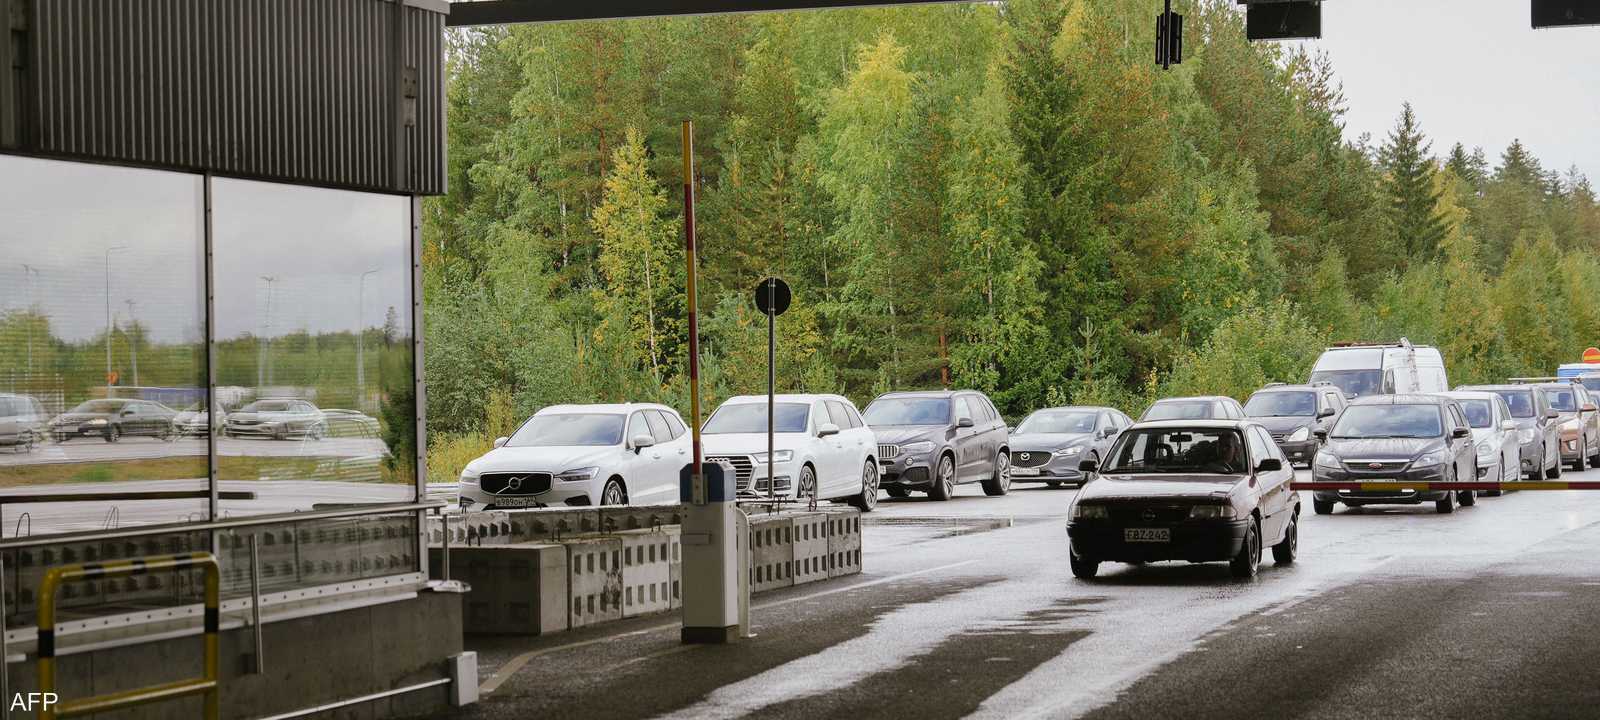 حدود فنلندا